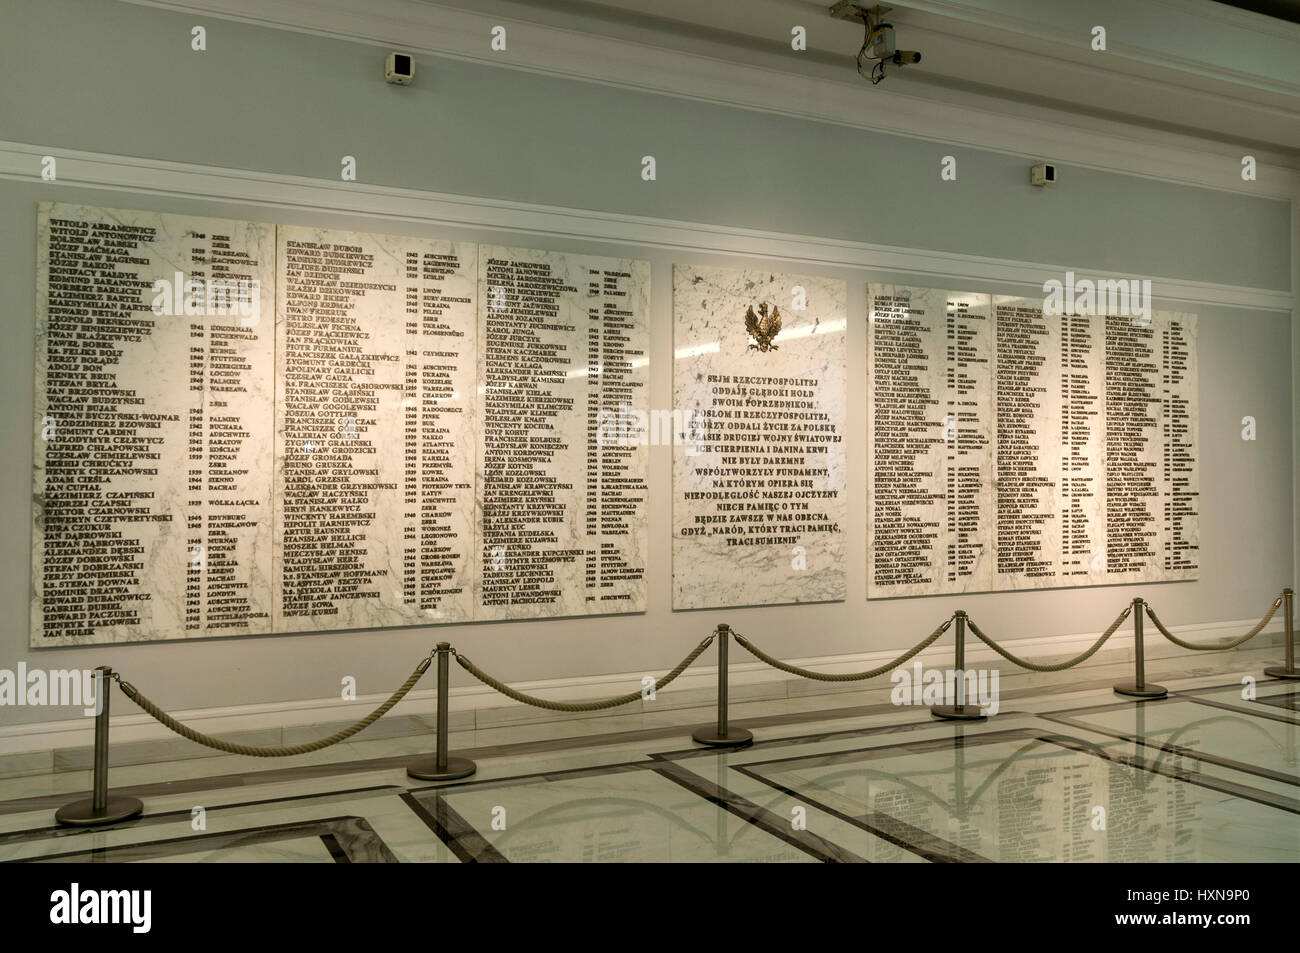 Un grand mémorial du mur de marbre dans le foyer principal du Parlement polonais (Sejm) à Varsovie, Pologne. Le mémorial affiche une longue liste de noms de tho Banque D'Images